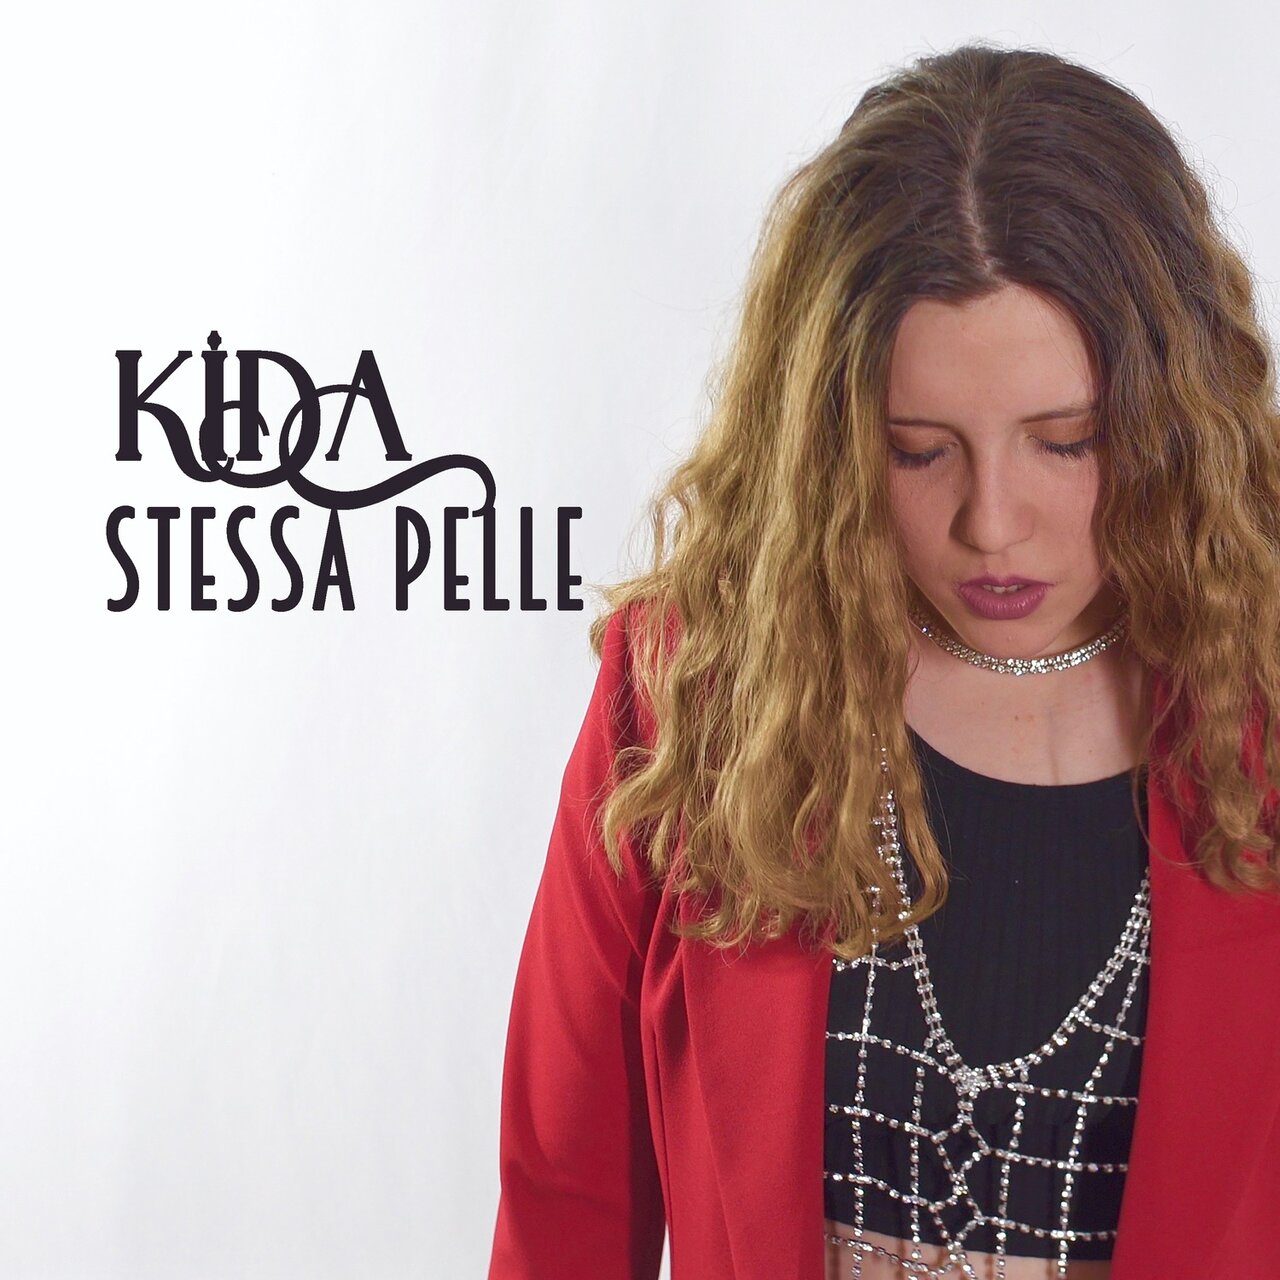 Kida Stessa pelle cover artwork